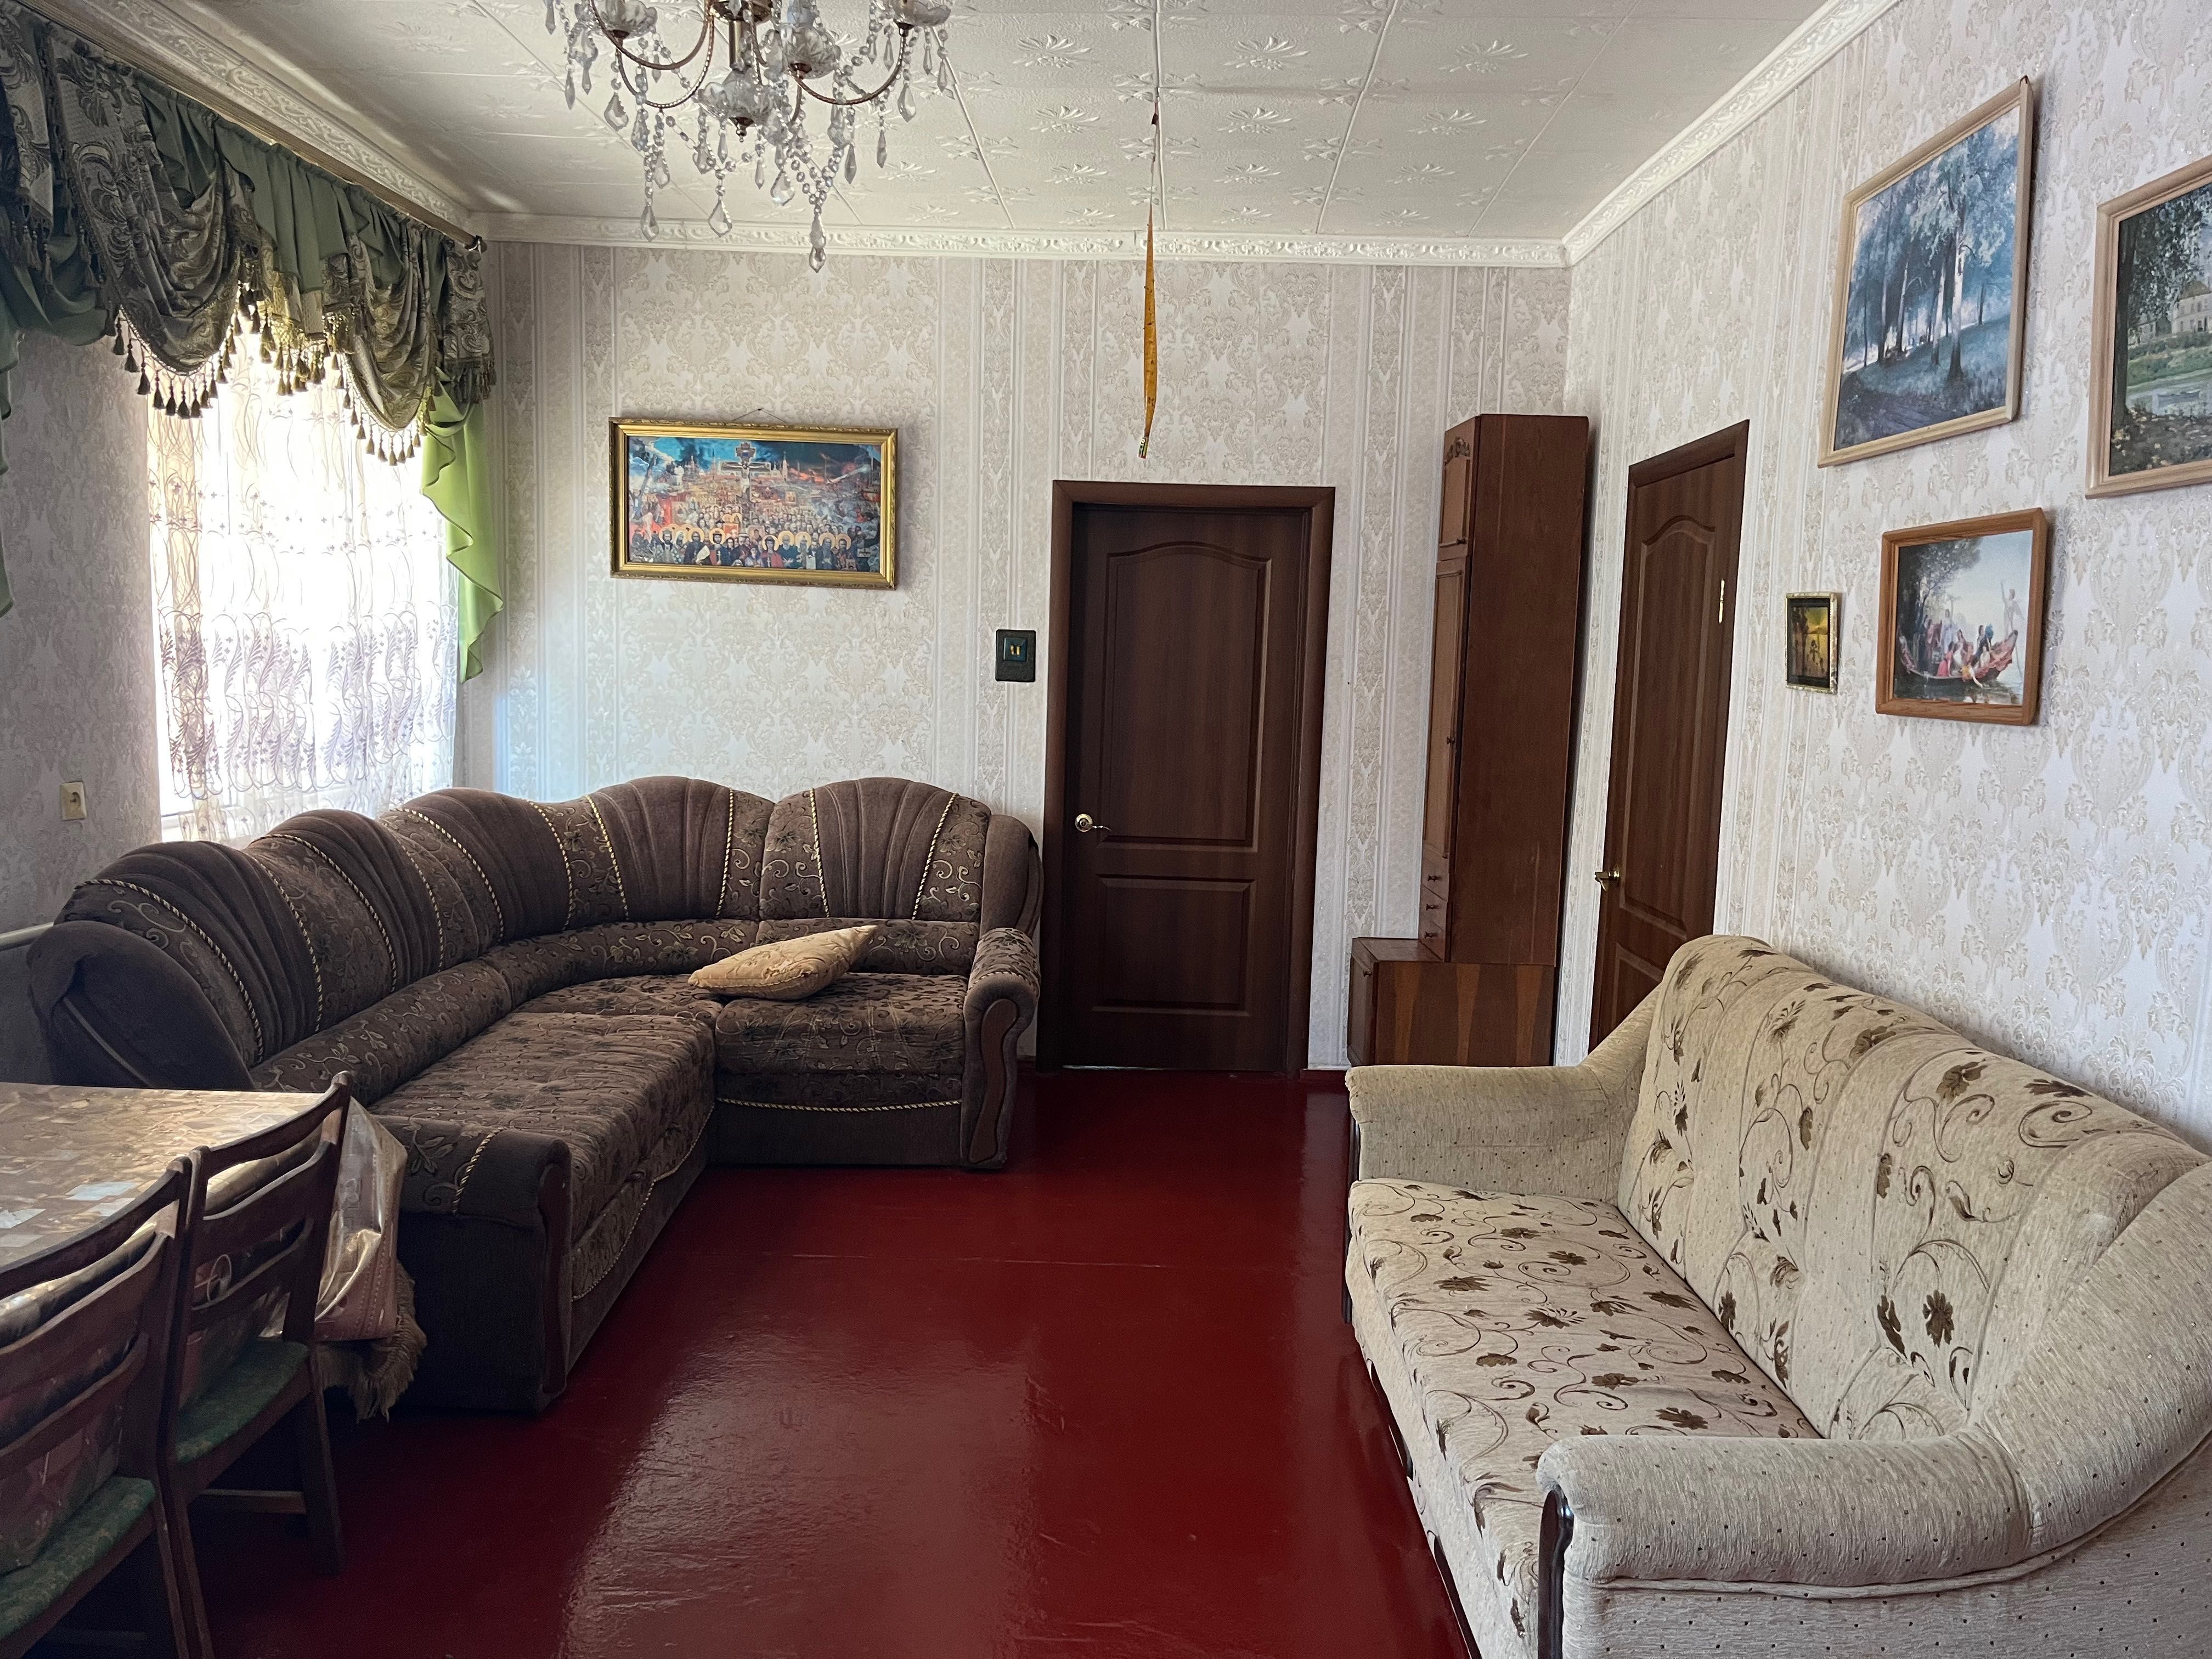 Продаж будинку м. Яготин, вул. Чернишевського, 40, р-н «Вокзал»